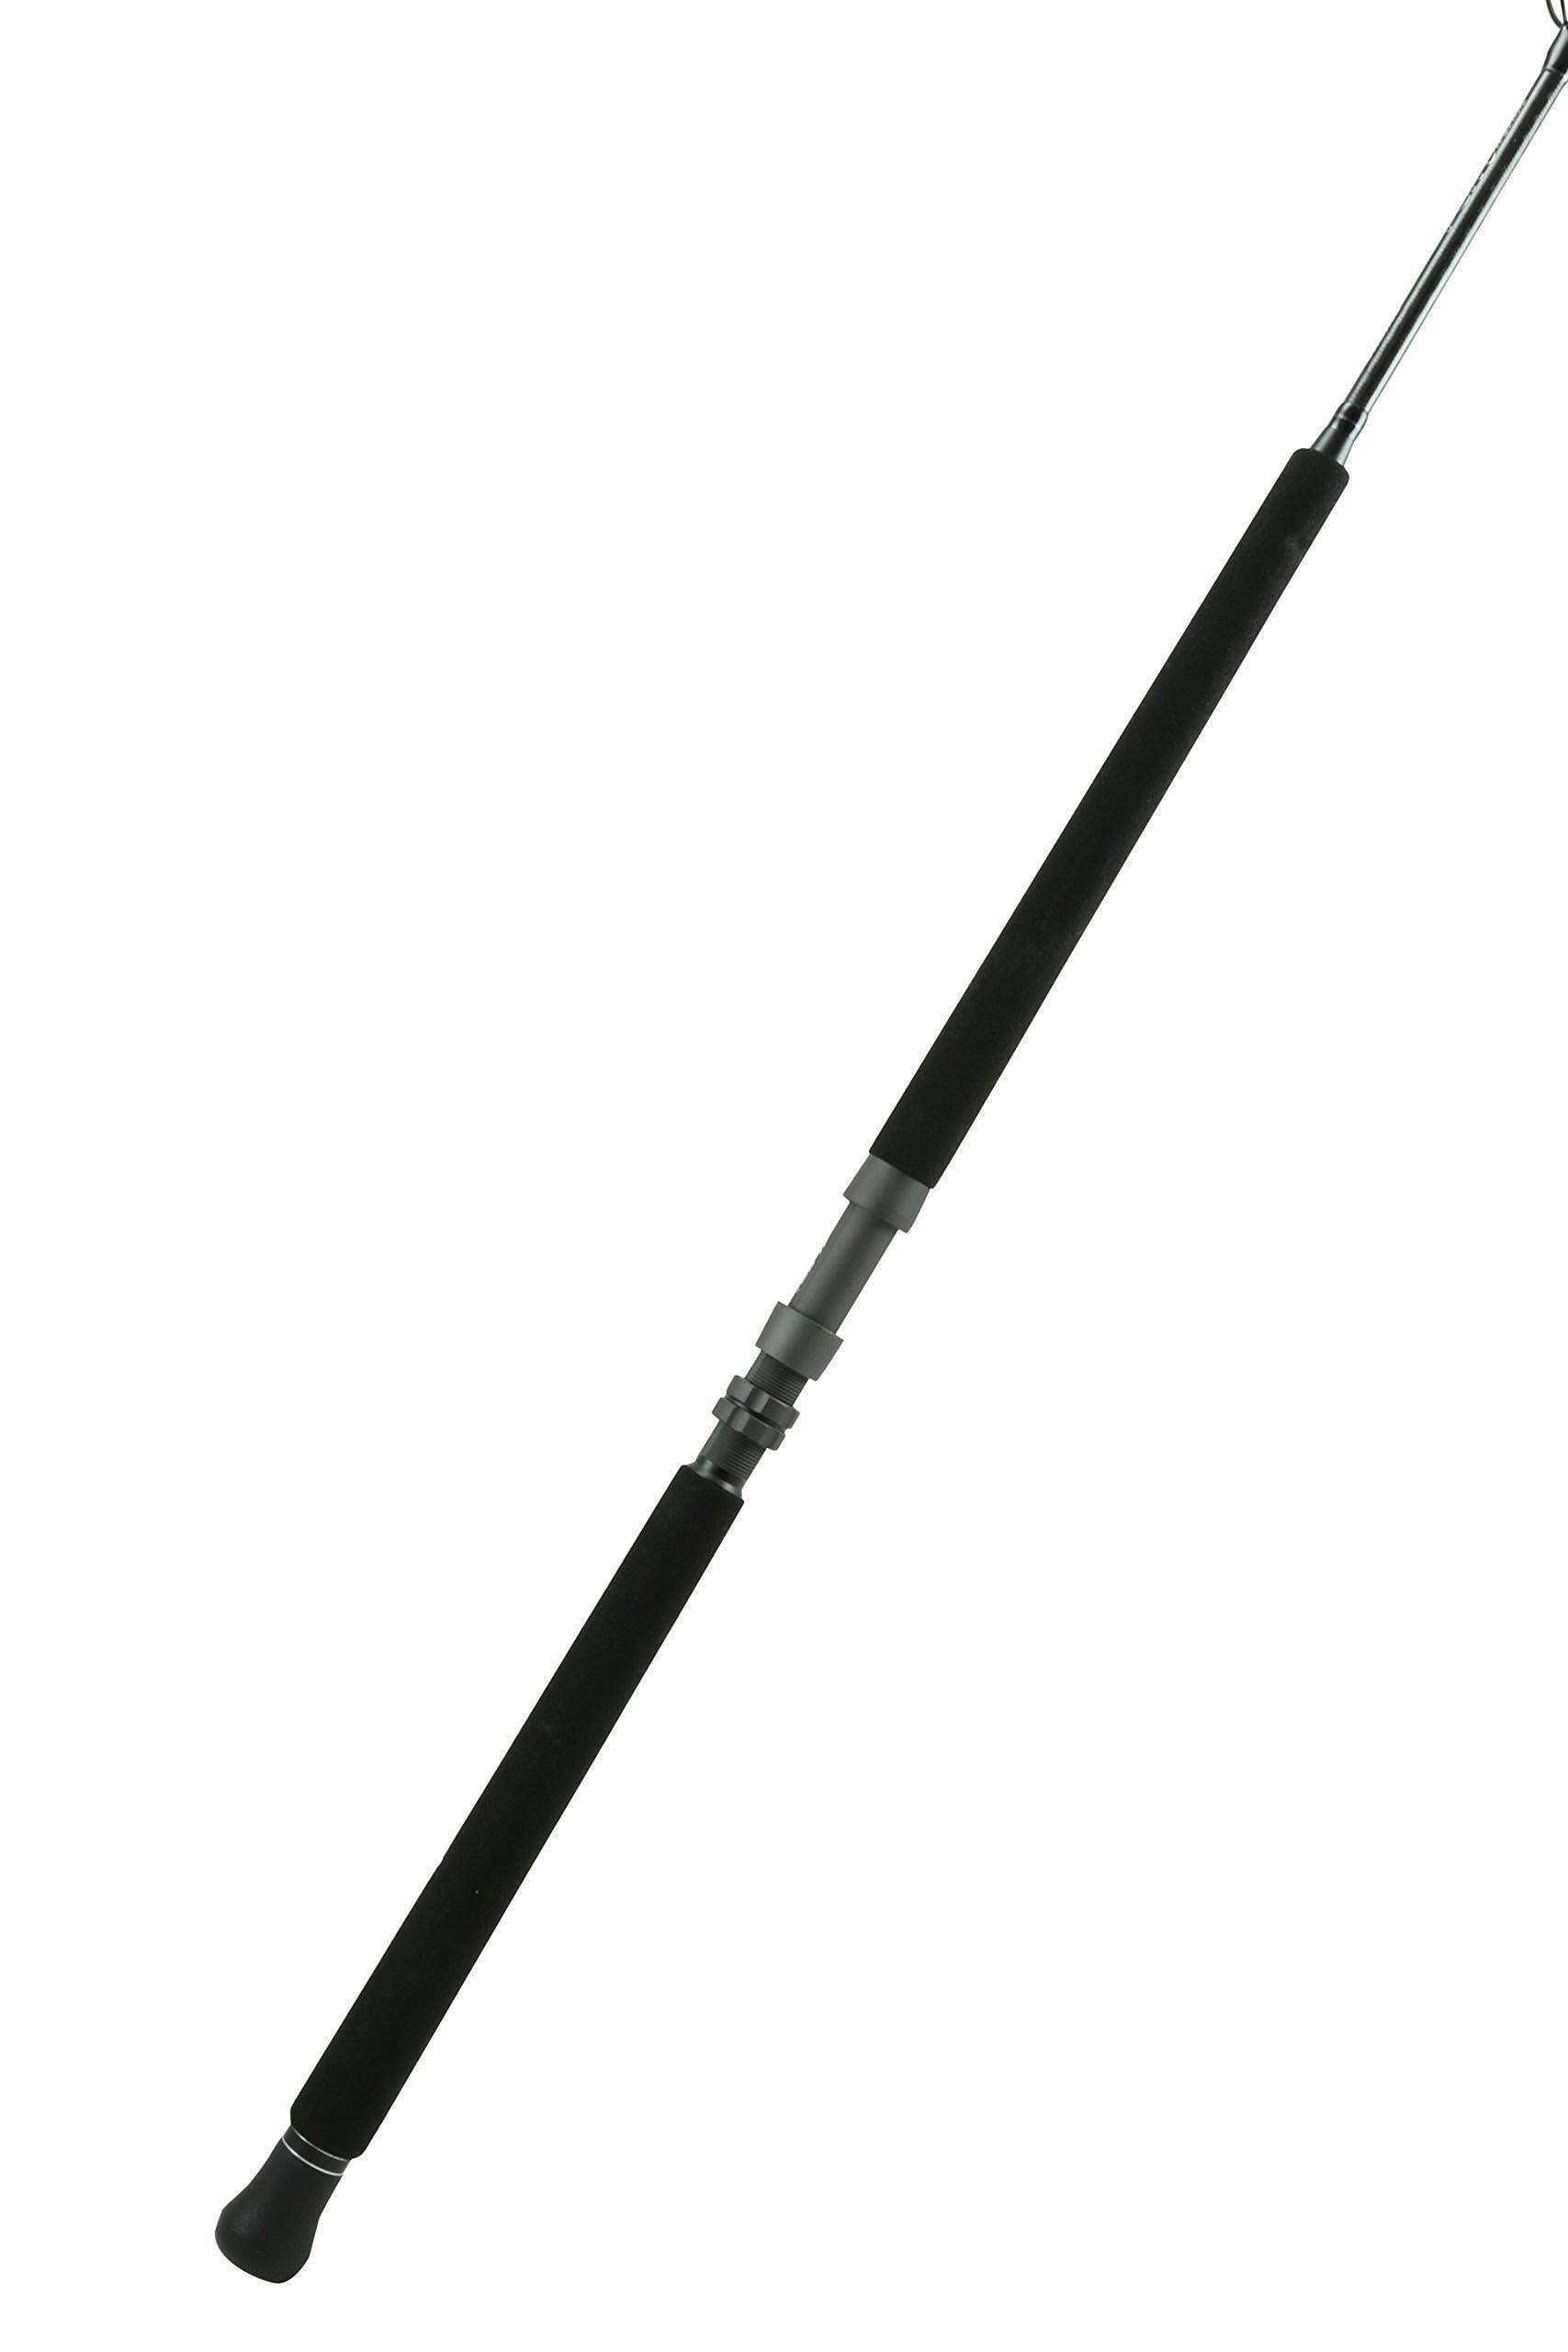 Okuma PCH Custom Rod 7' 6" H 1-Pcs 20-50 lbs